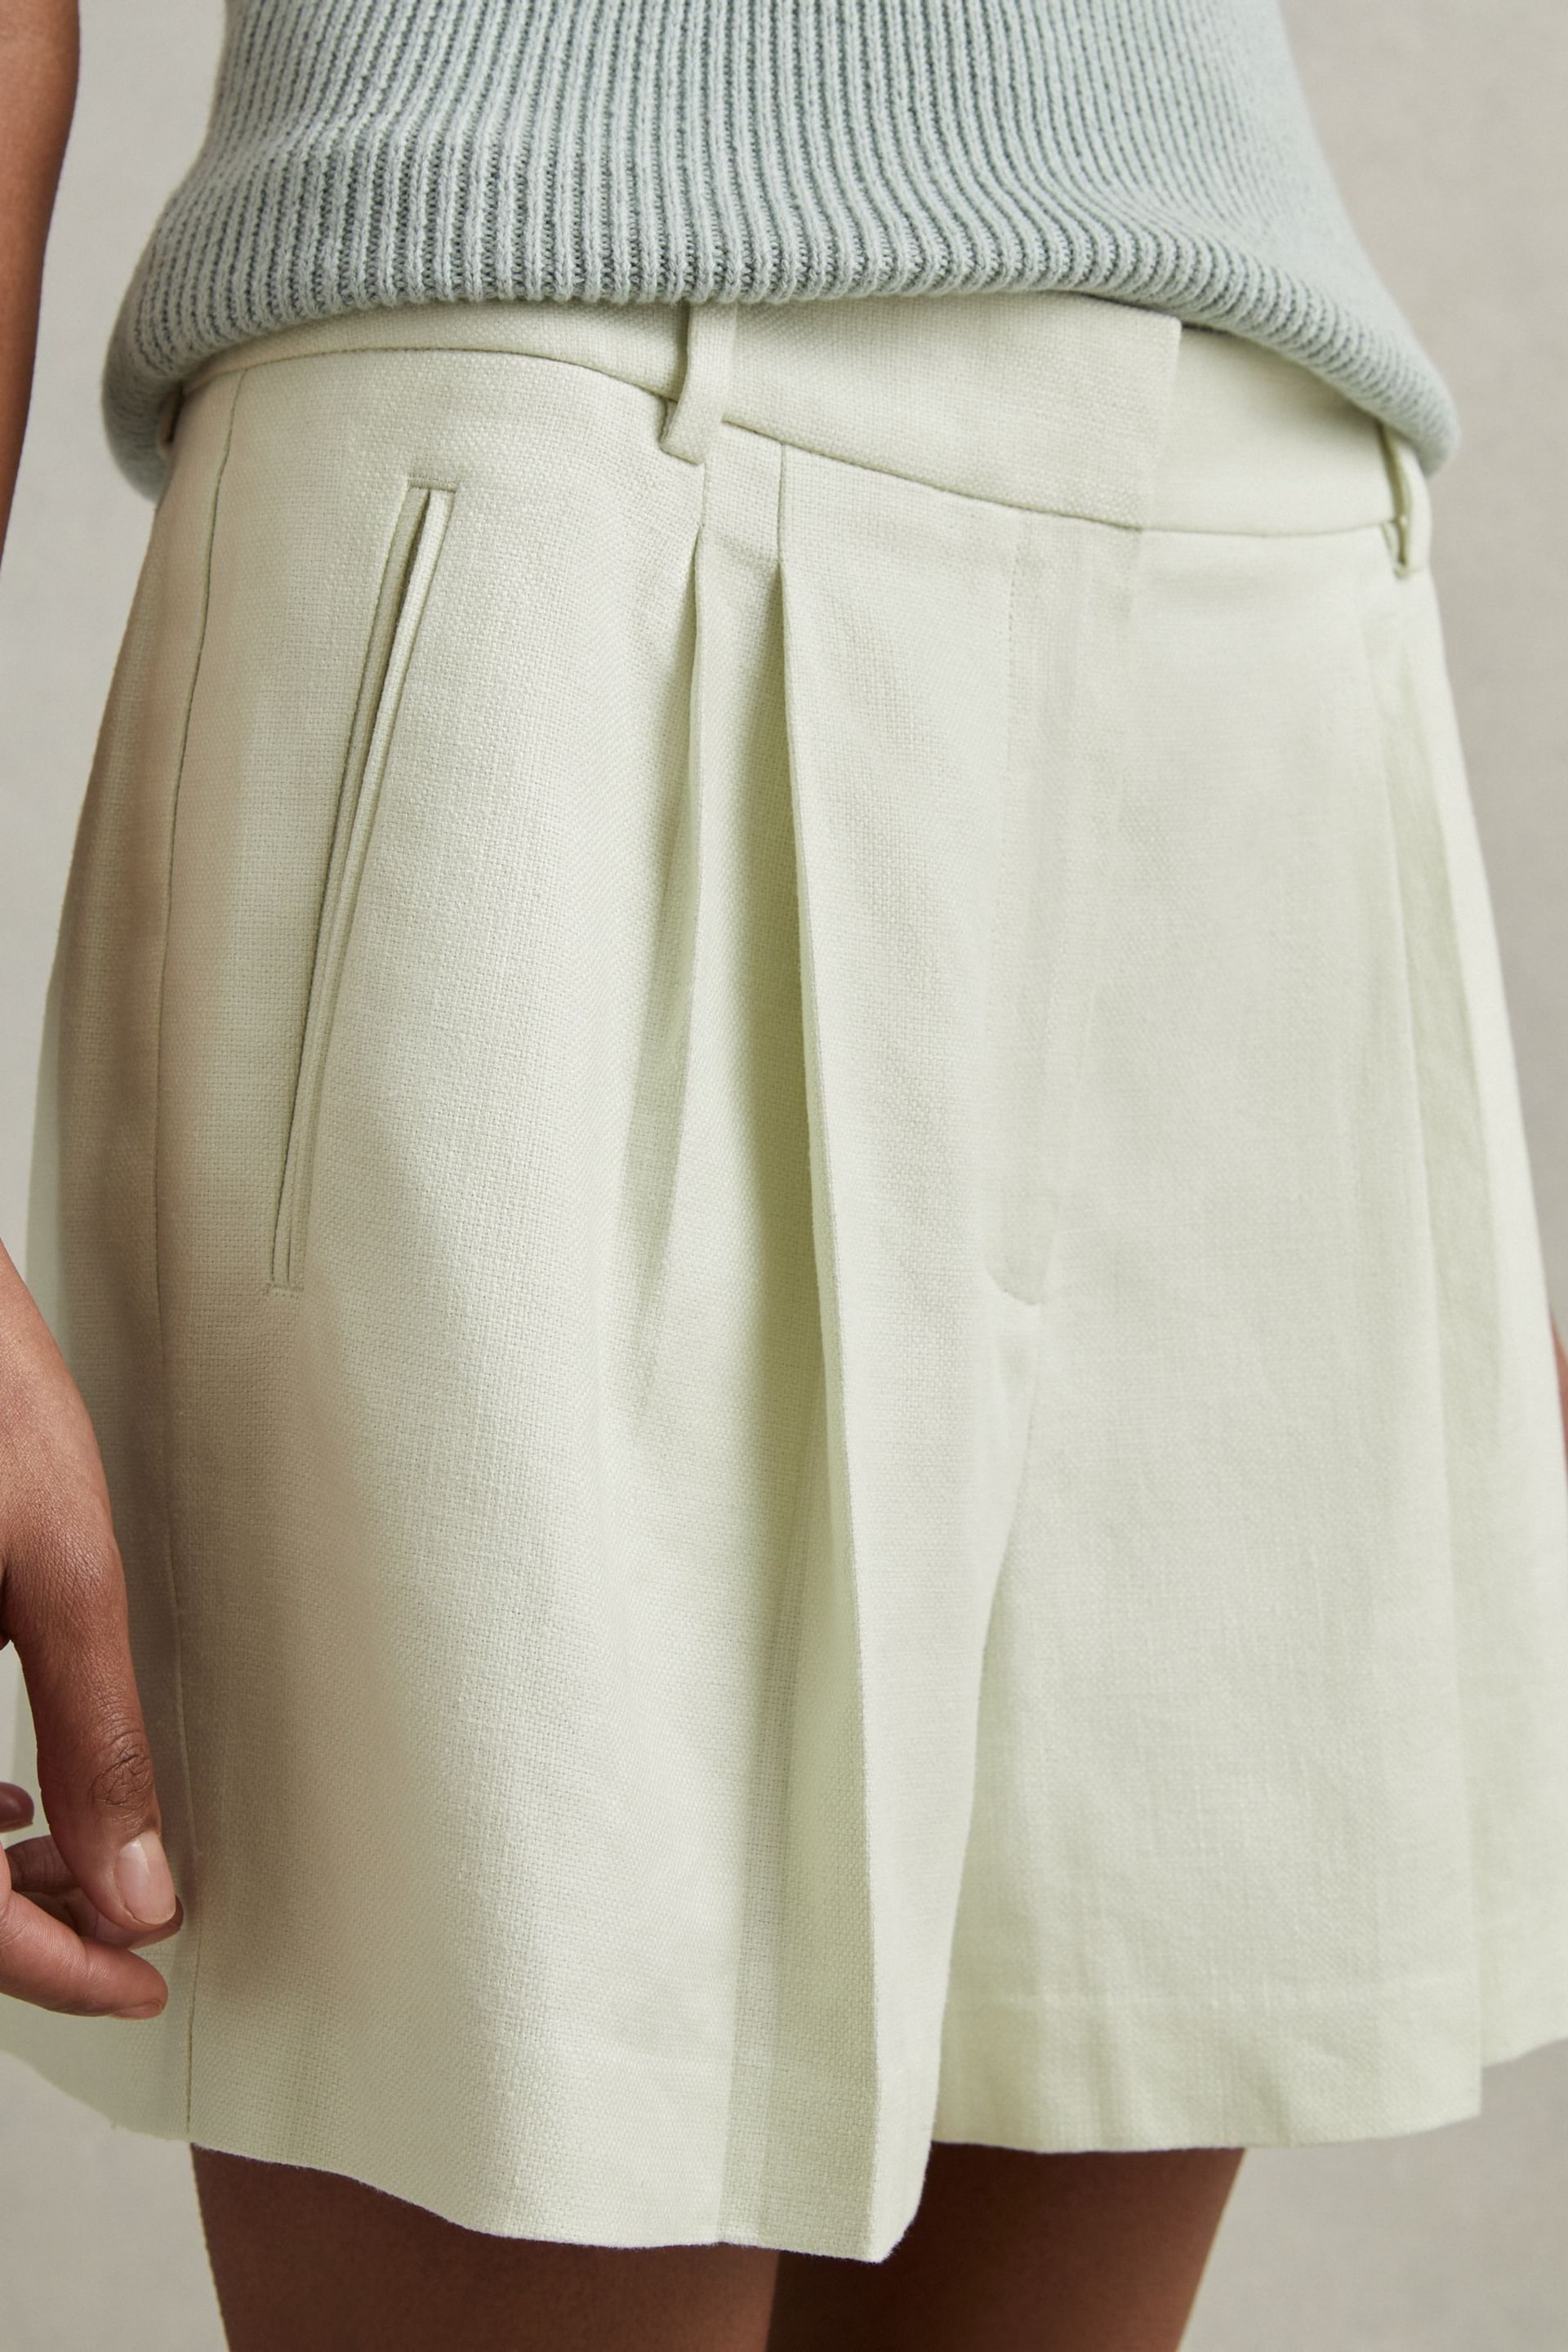 Reiss Mint Dianna Front Pleat Linen Blend Suit Shorts - Image 4 of 6